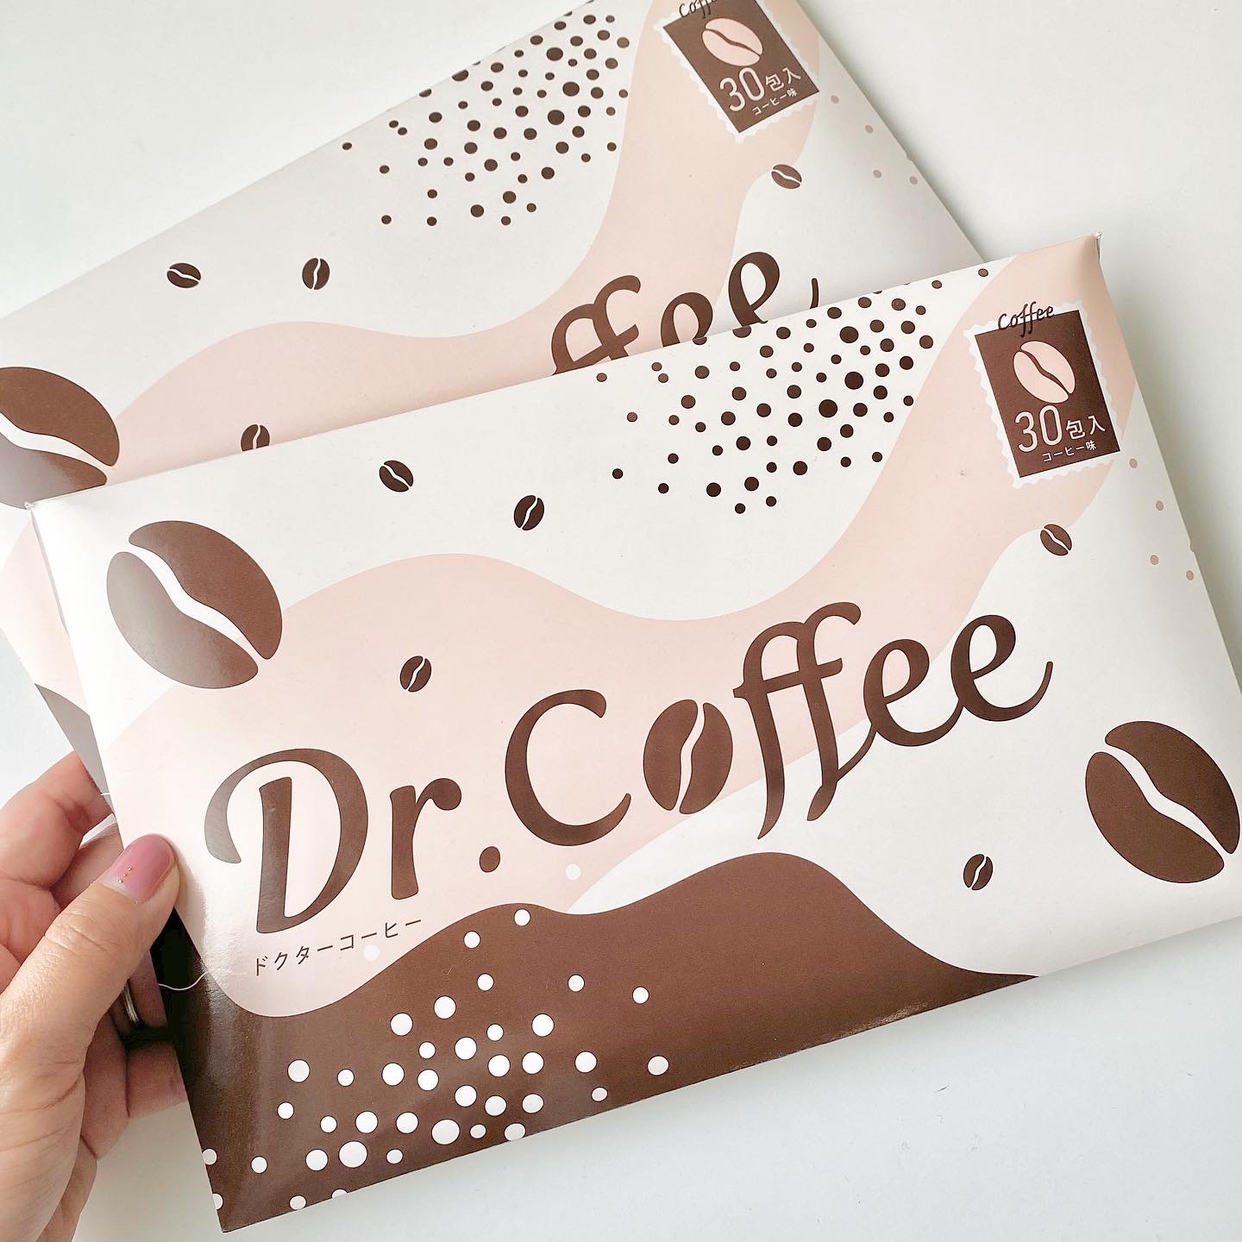 Dr.Coffee(ドクターコーヒー) キリッとコーヒークレンズの良い点・メリットに関するnitaさんの口コミ画像2